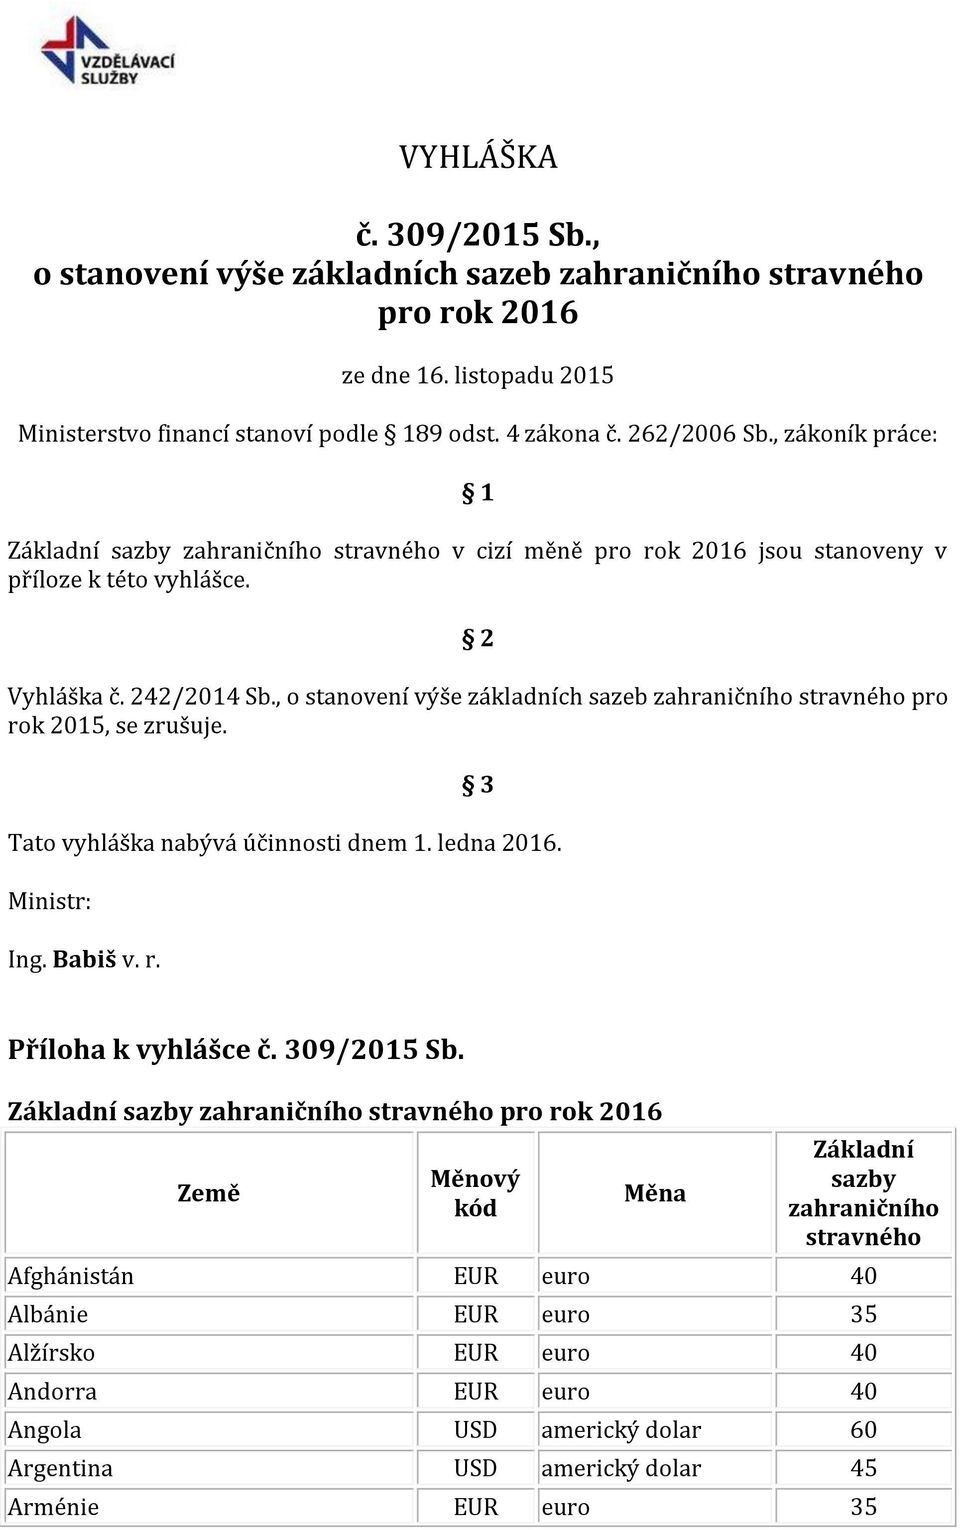 , o stanovení výše základních sazeb zahraničního stravného pro rok 2015, se zrušuje. 3 Tato vyhláška nabývá účinnosti dnem 1. ledna 2016. Ministr: Ing. Babiš v. r. Příloha k vyhlášce č. 309/2015 Sb.